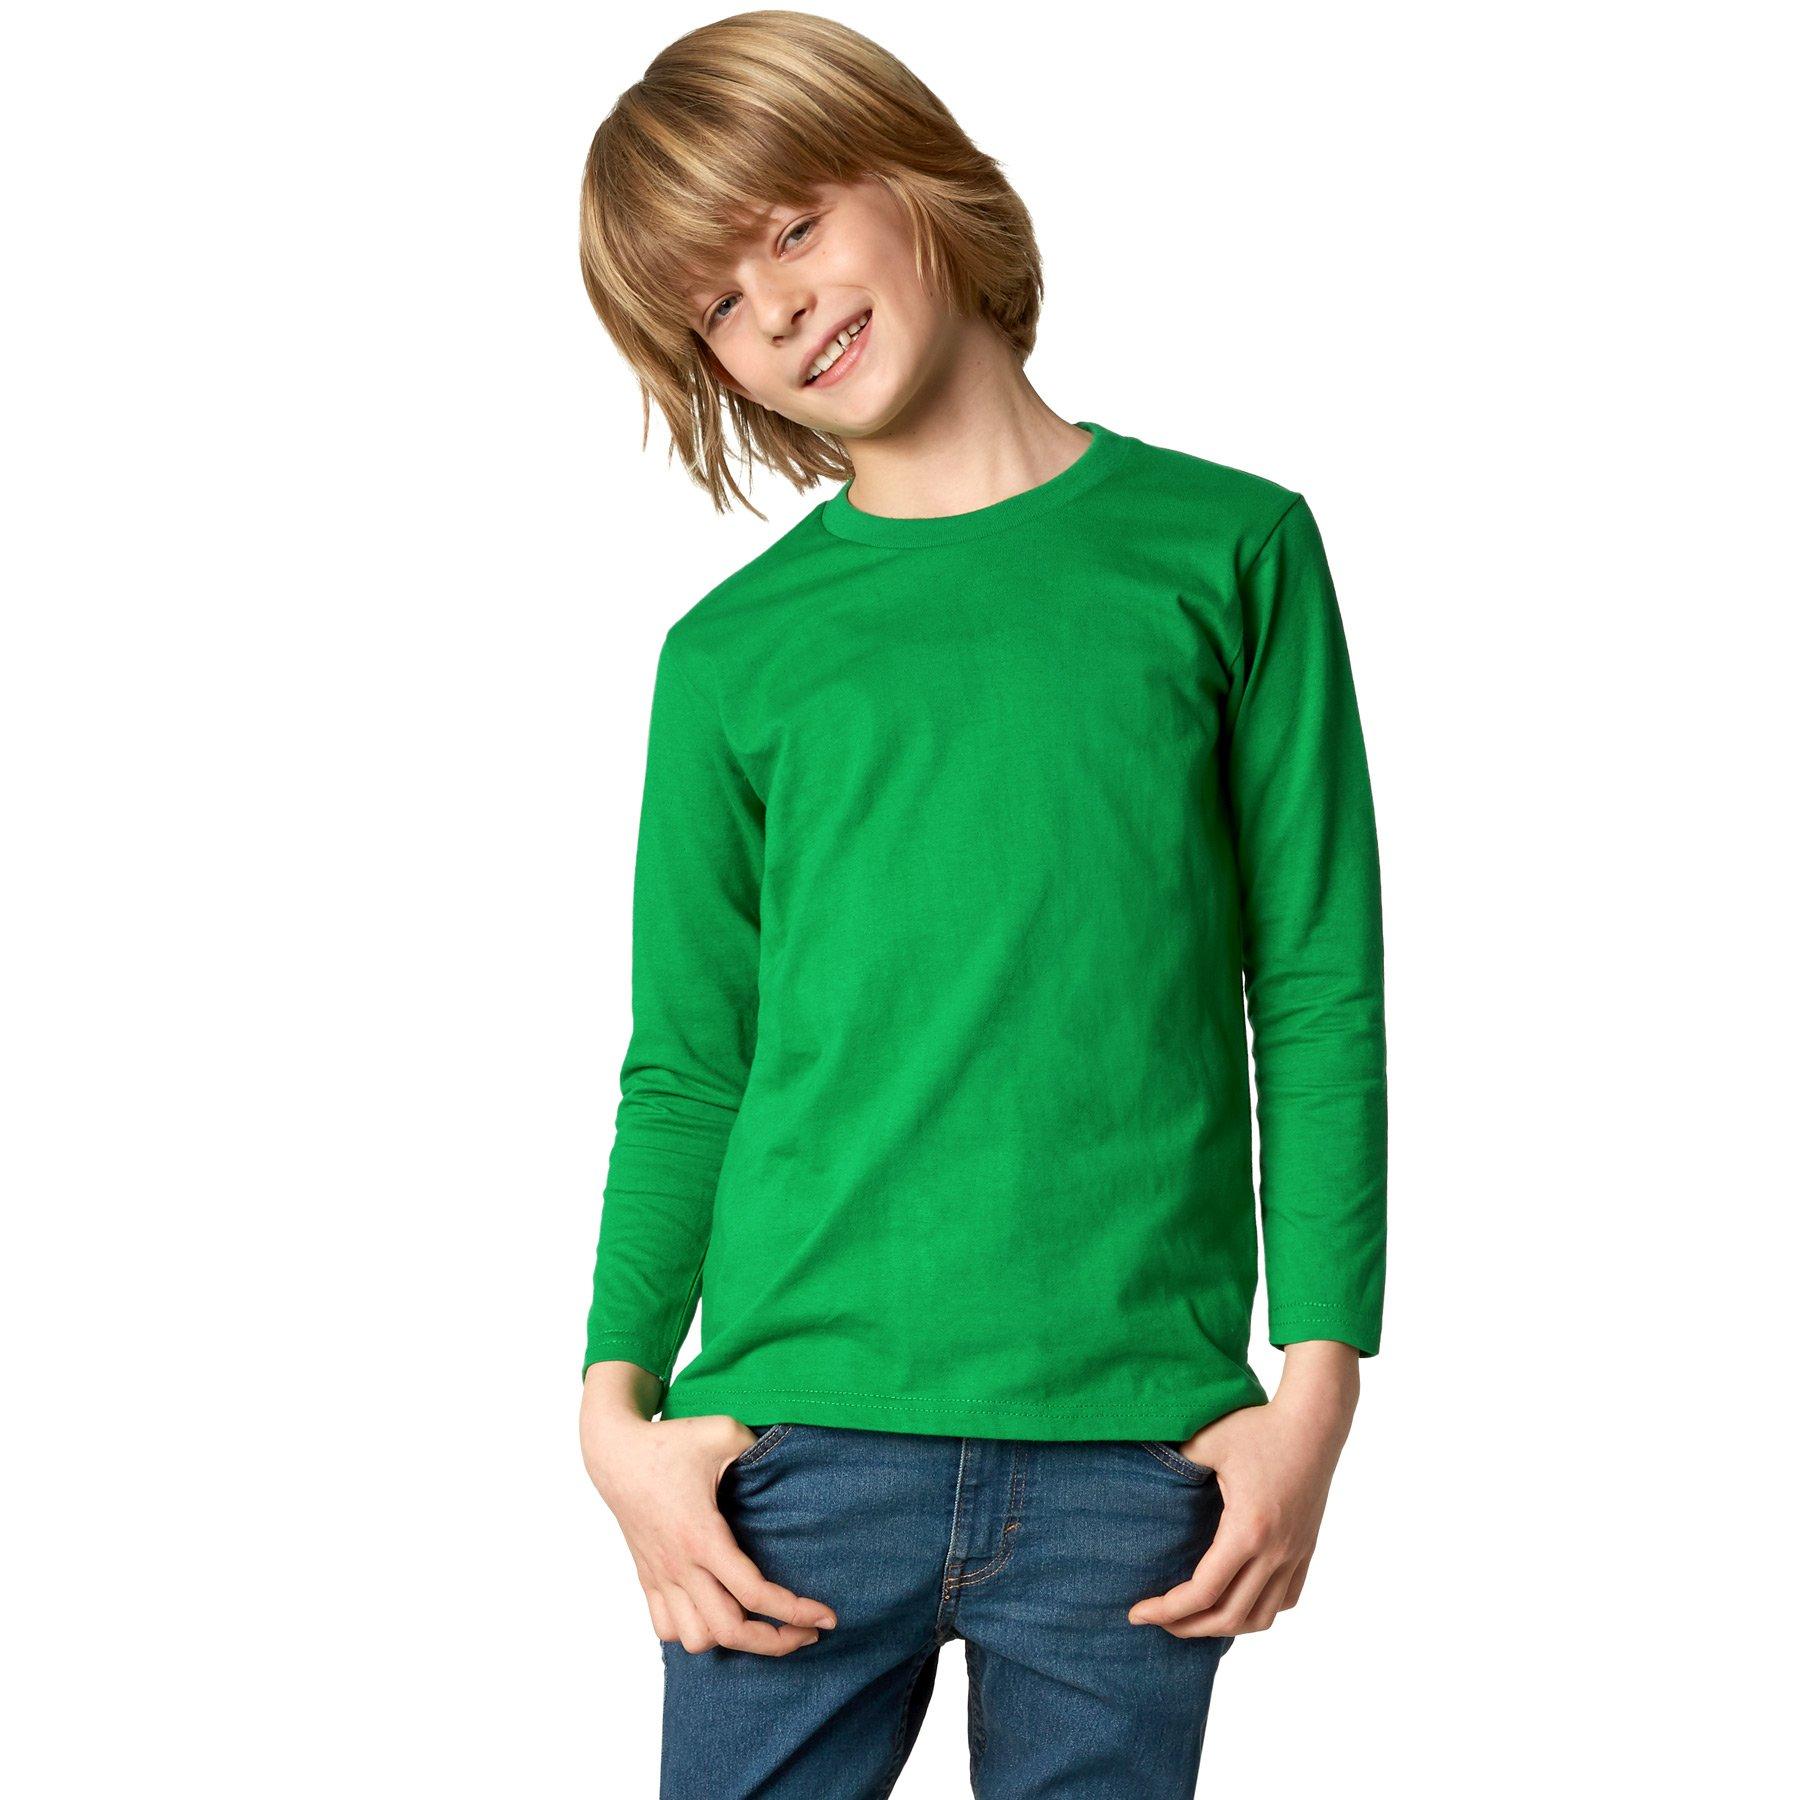 Langarm-shirt Kinder Jungen Grün 104 von Tectake